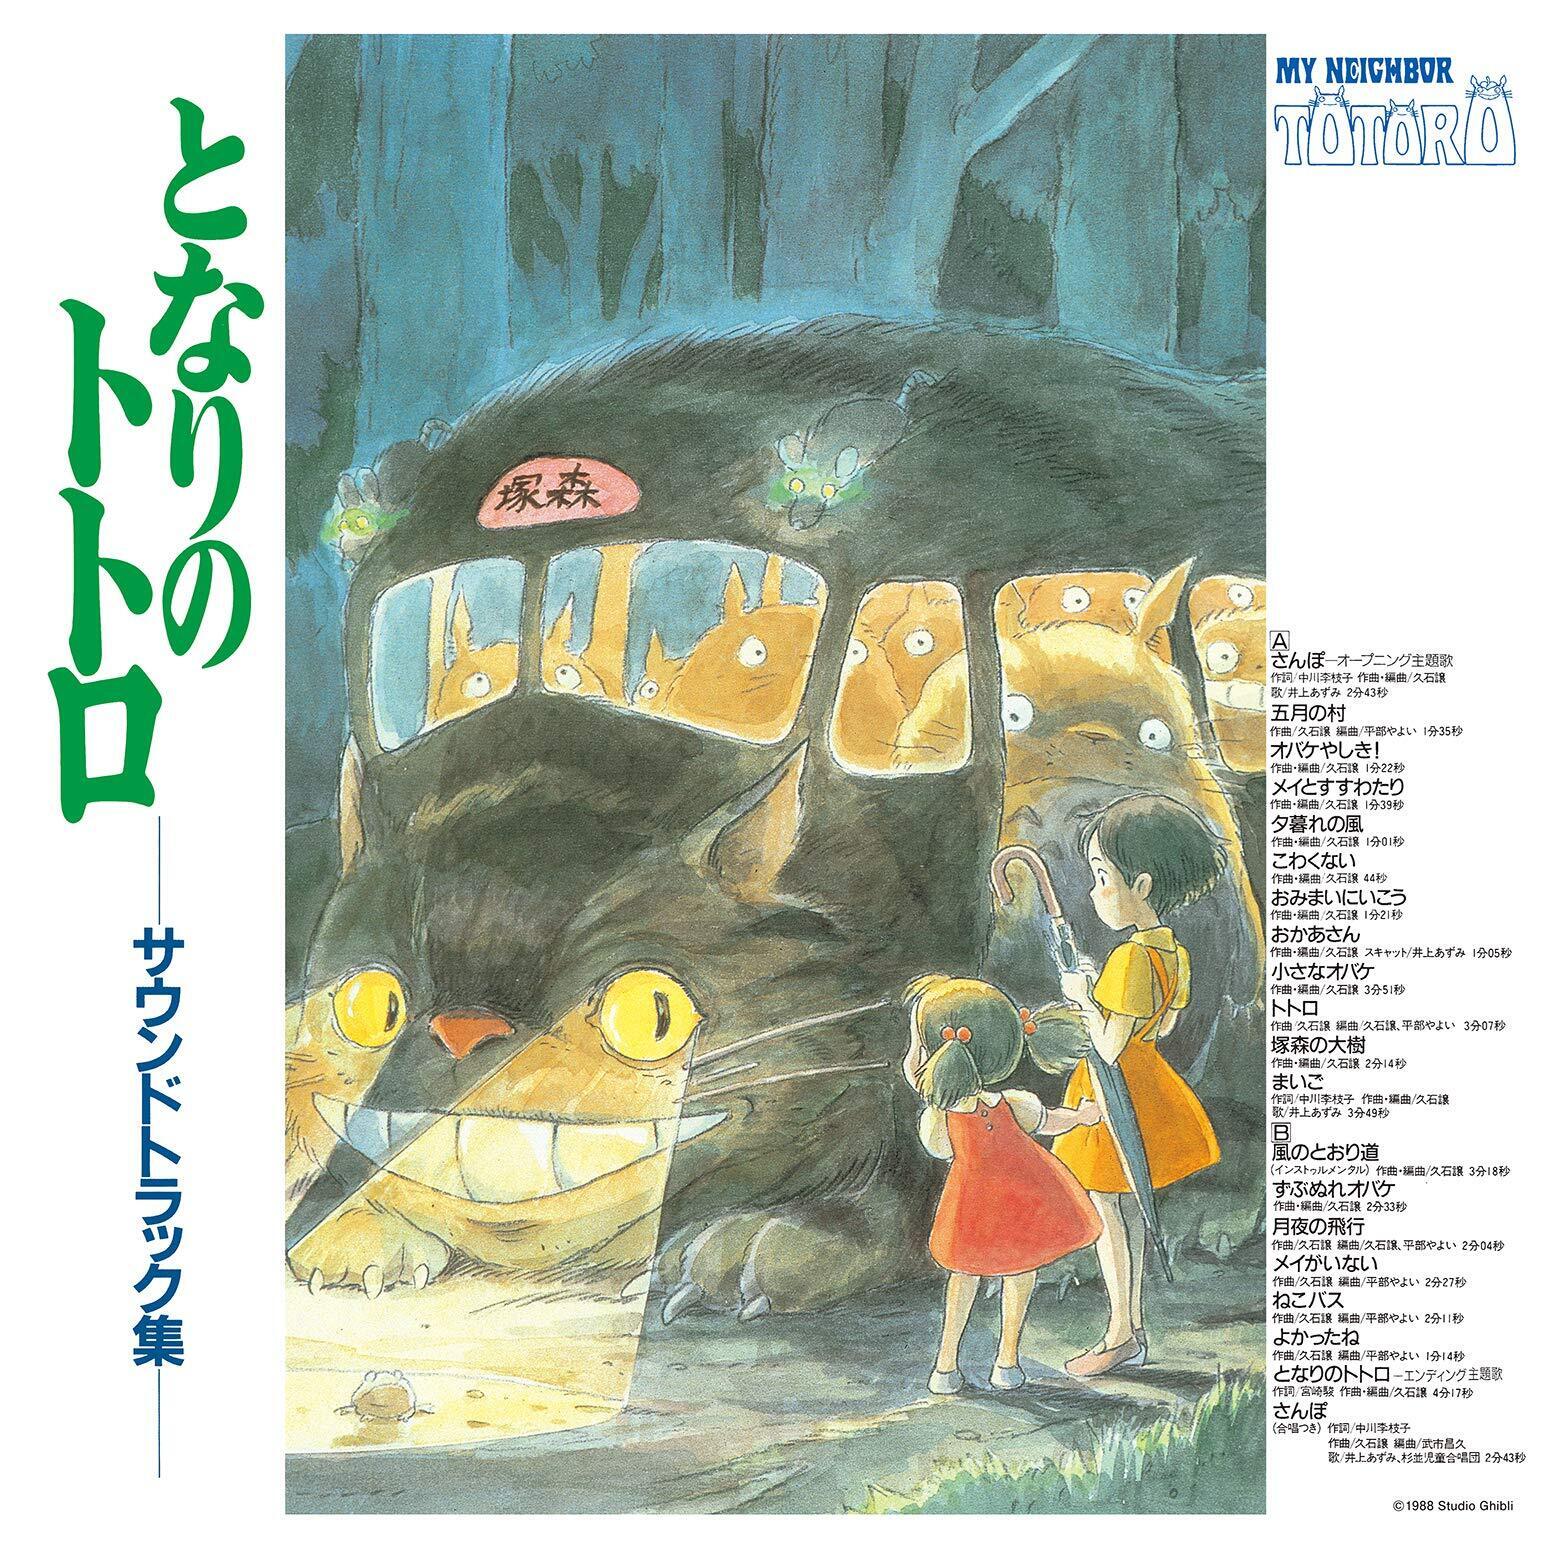 Поп Studio Ghibli Records OST - My Neighbor Totoro (Joe Hisaishi) (Black Vinyl LP) наш сосед степаныч